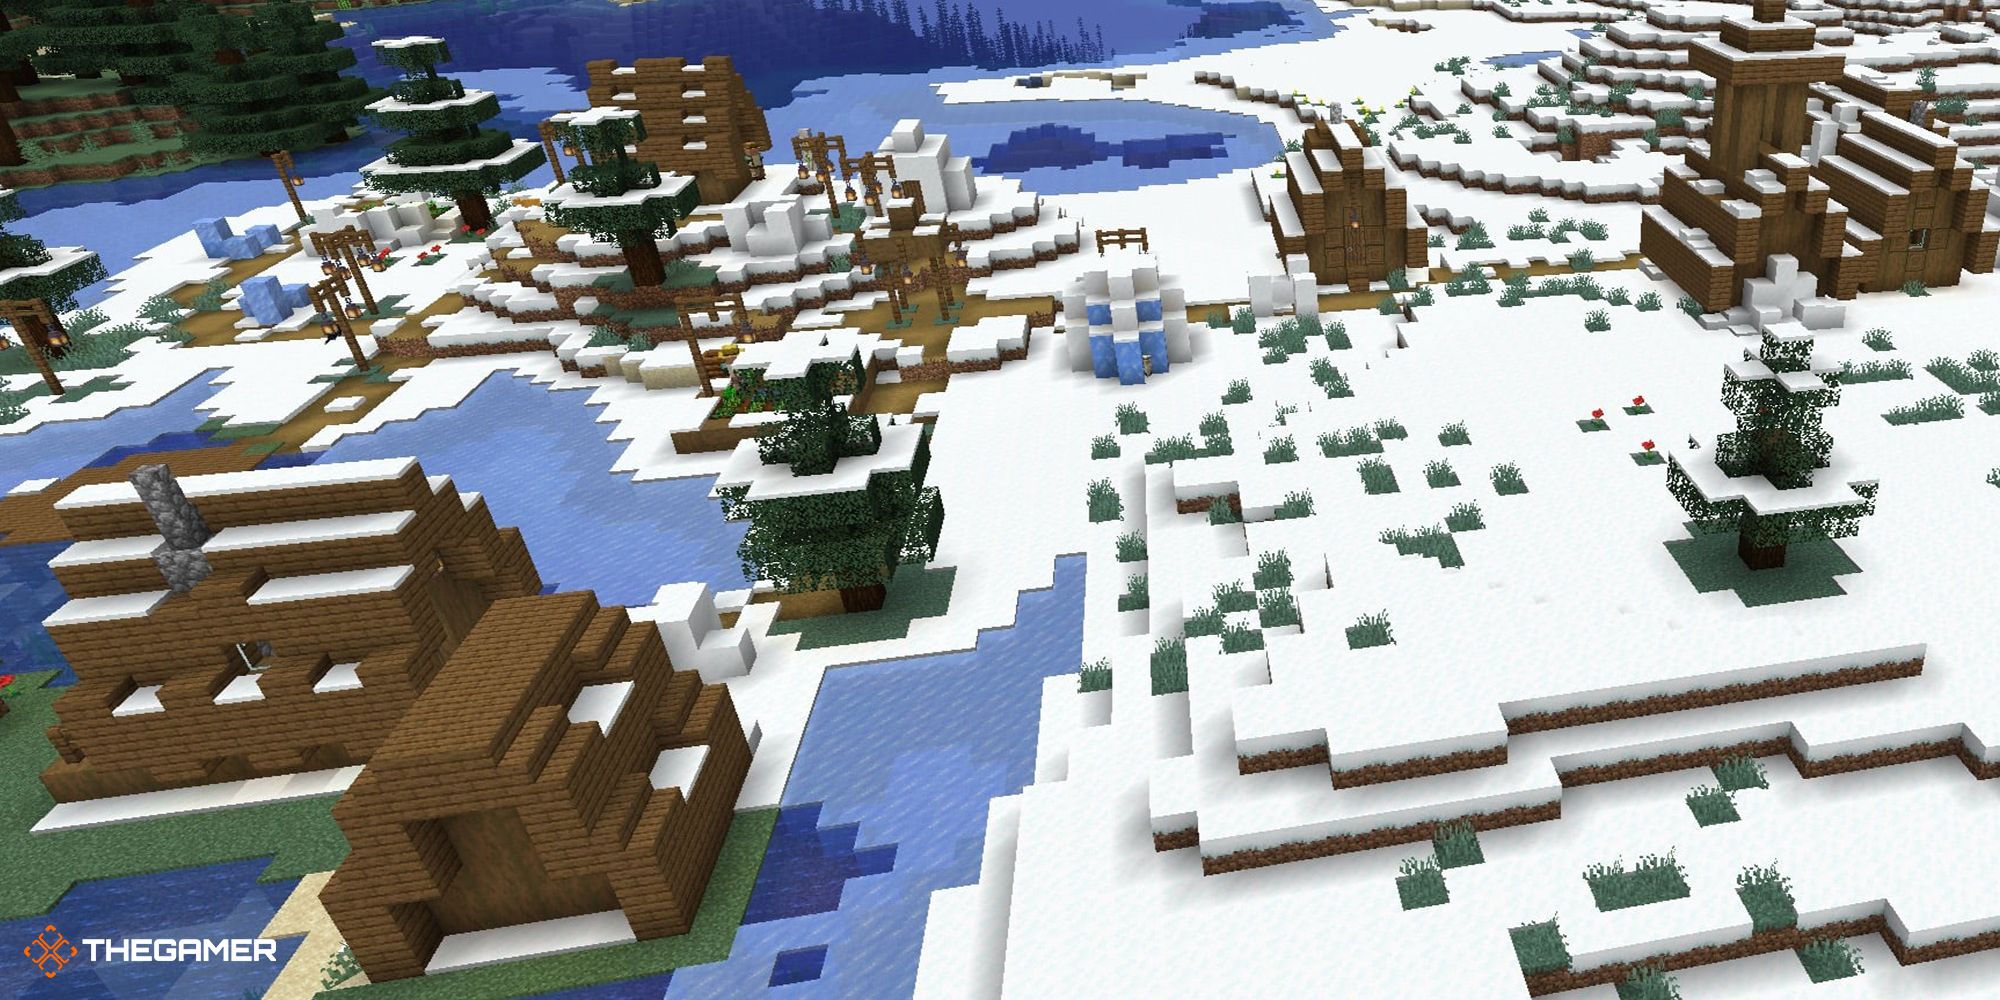 Minecraft - Village in a snowy biome